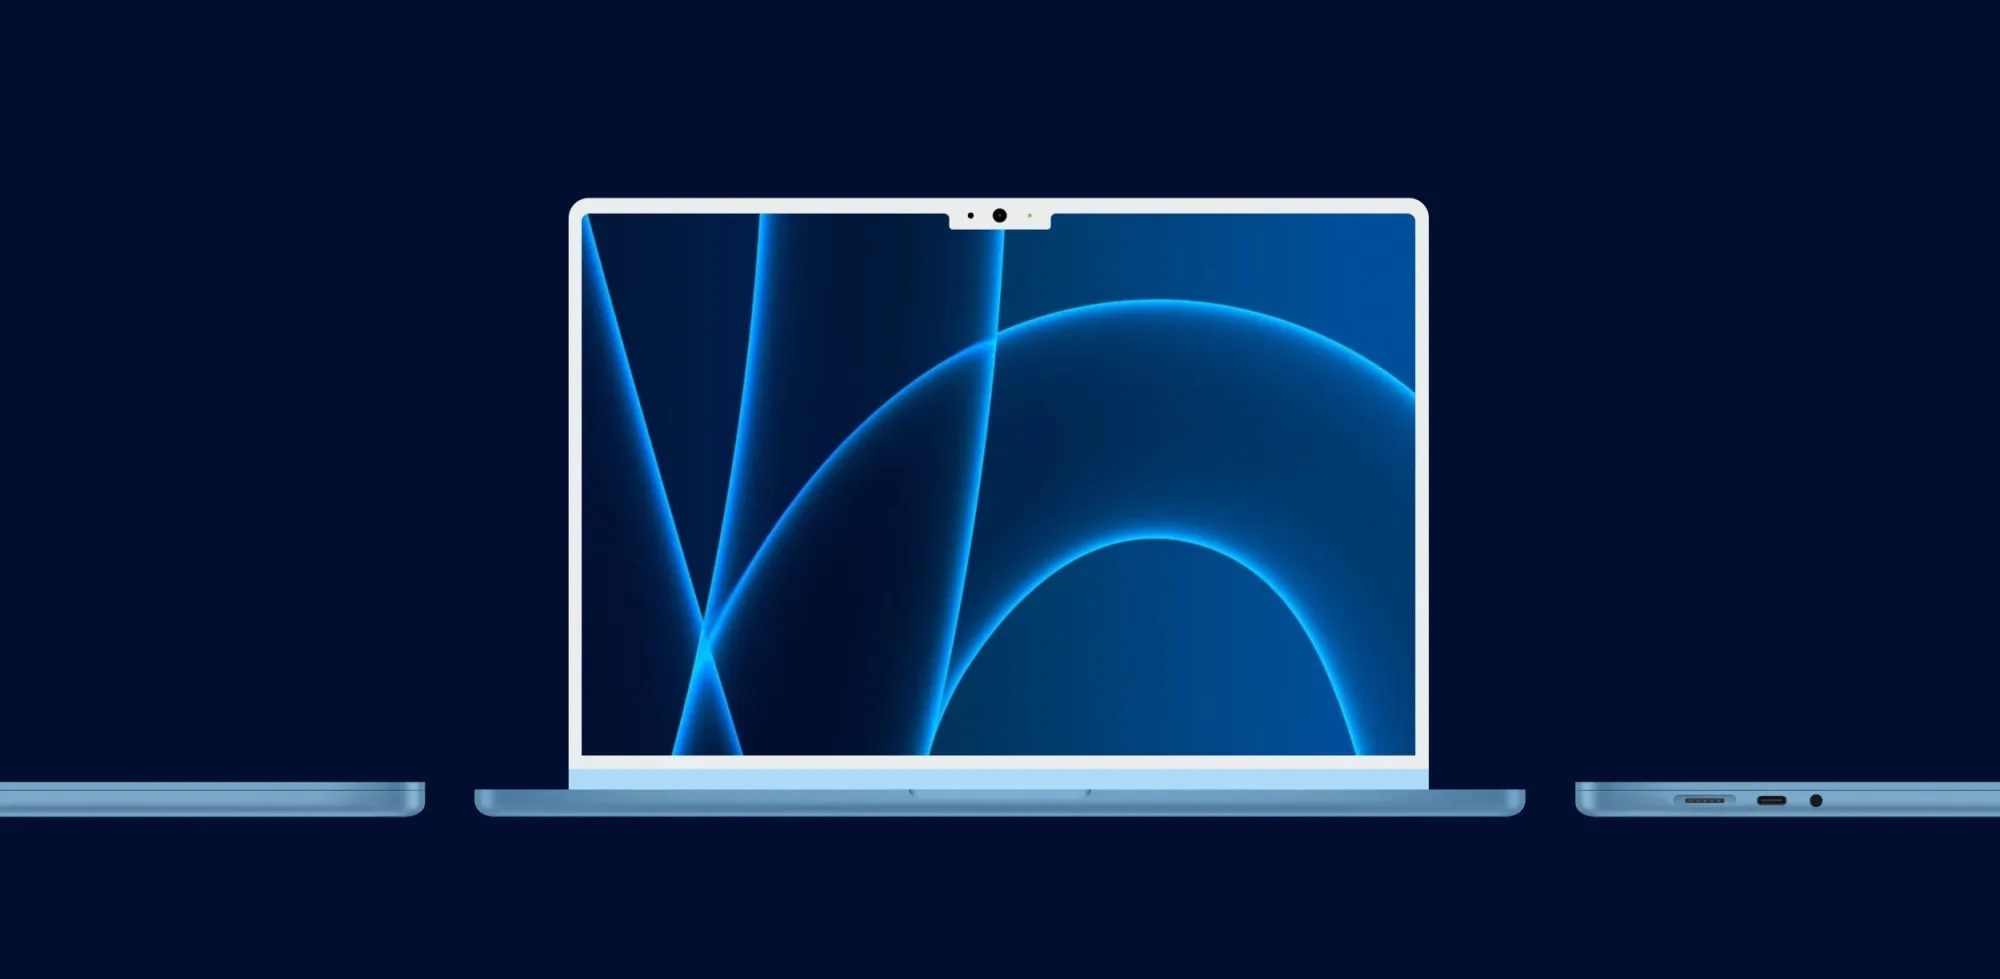 15 inçlik yeni MacBook, Air olarak adlandırılmayabilir